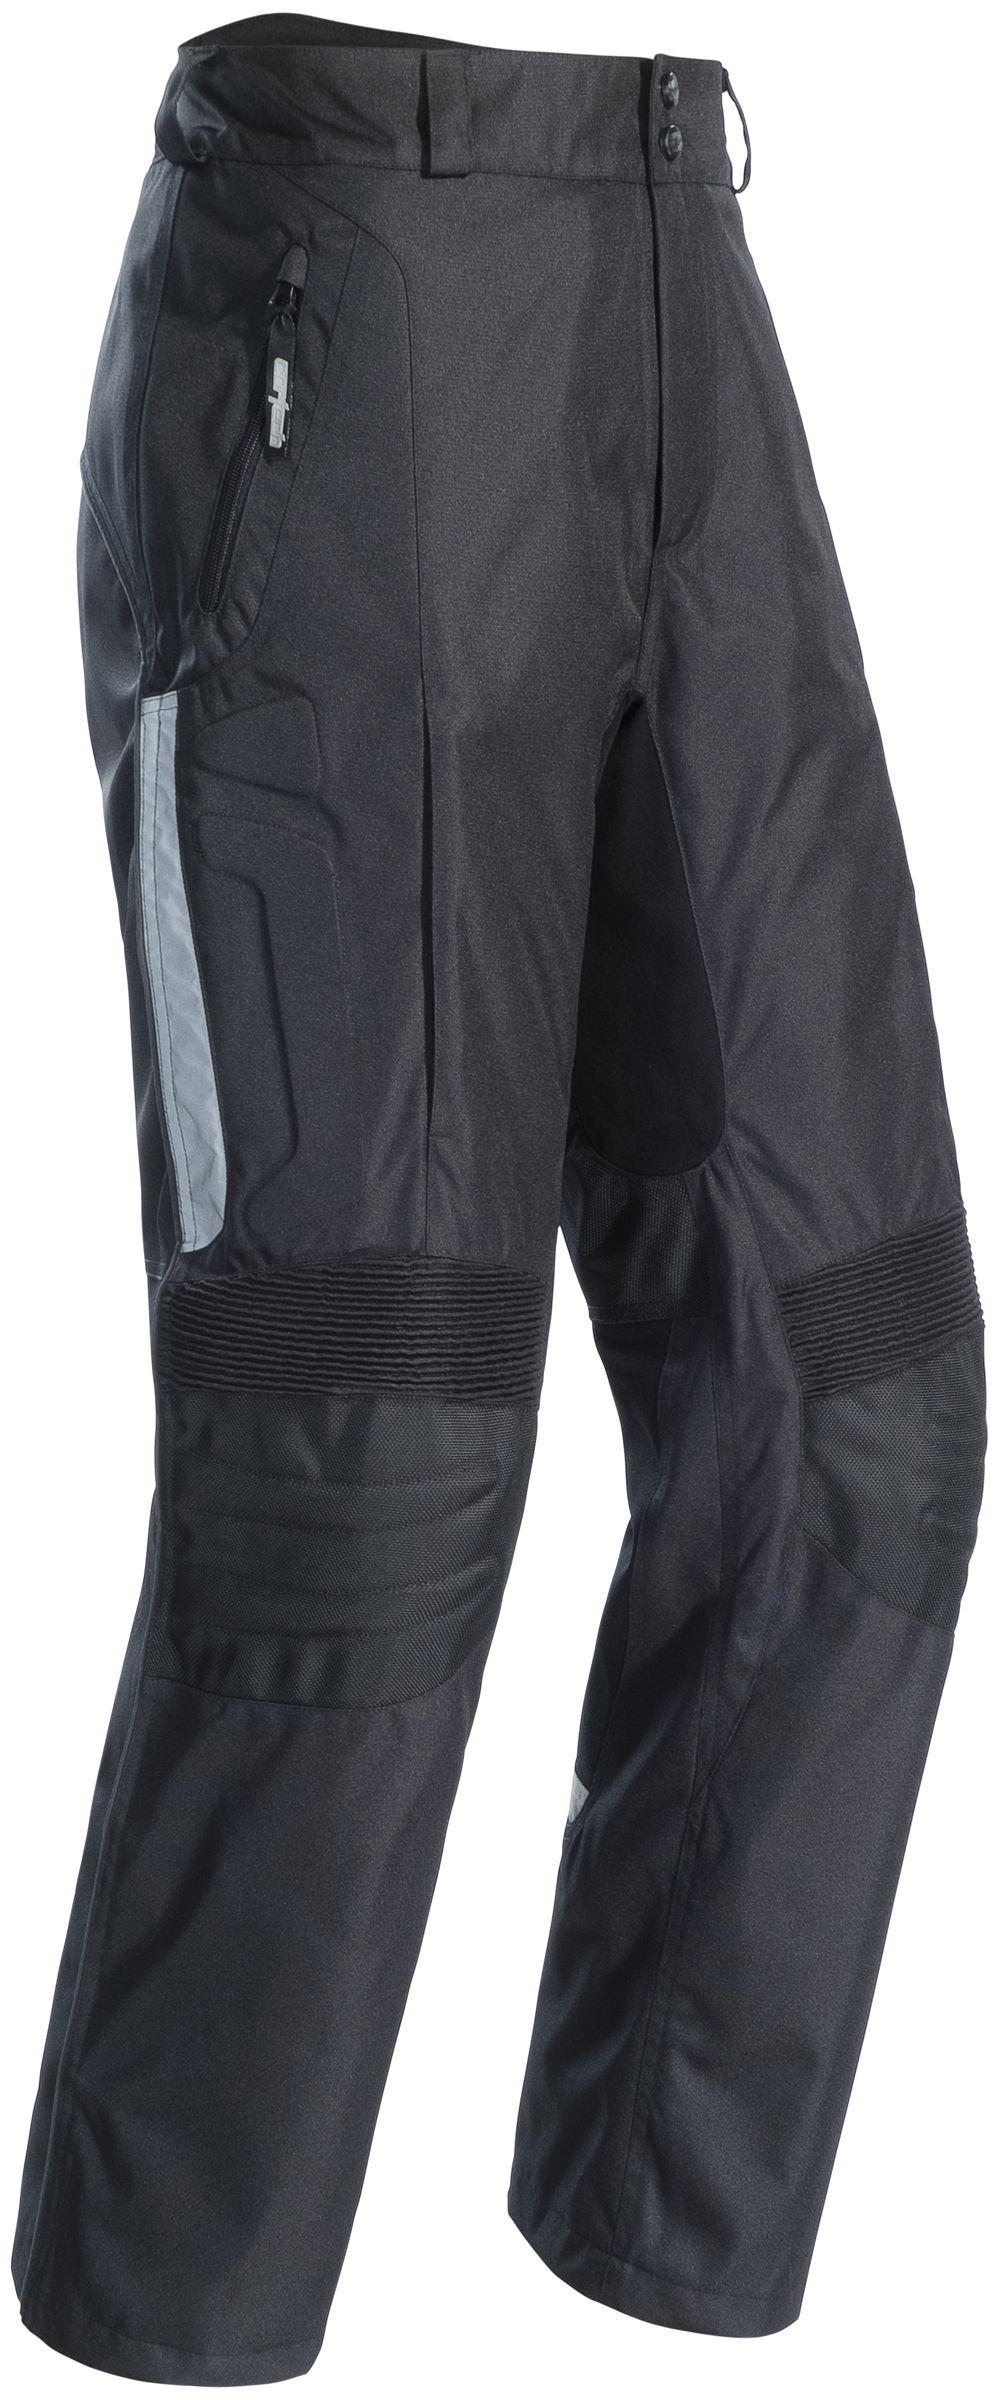 Cortech 8983-0105-04 gx sport pants black sml